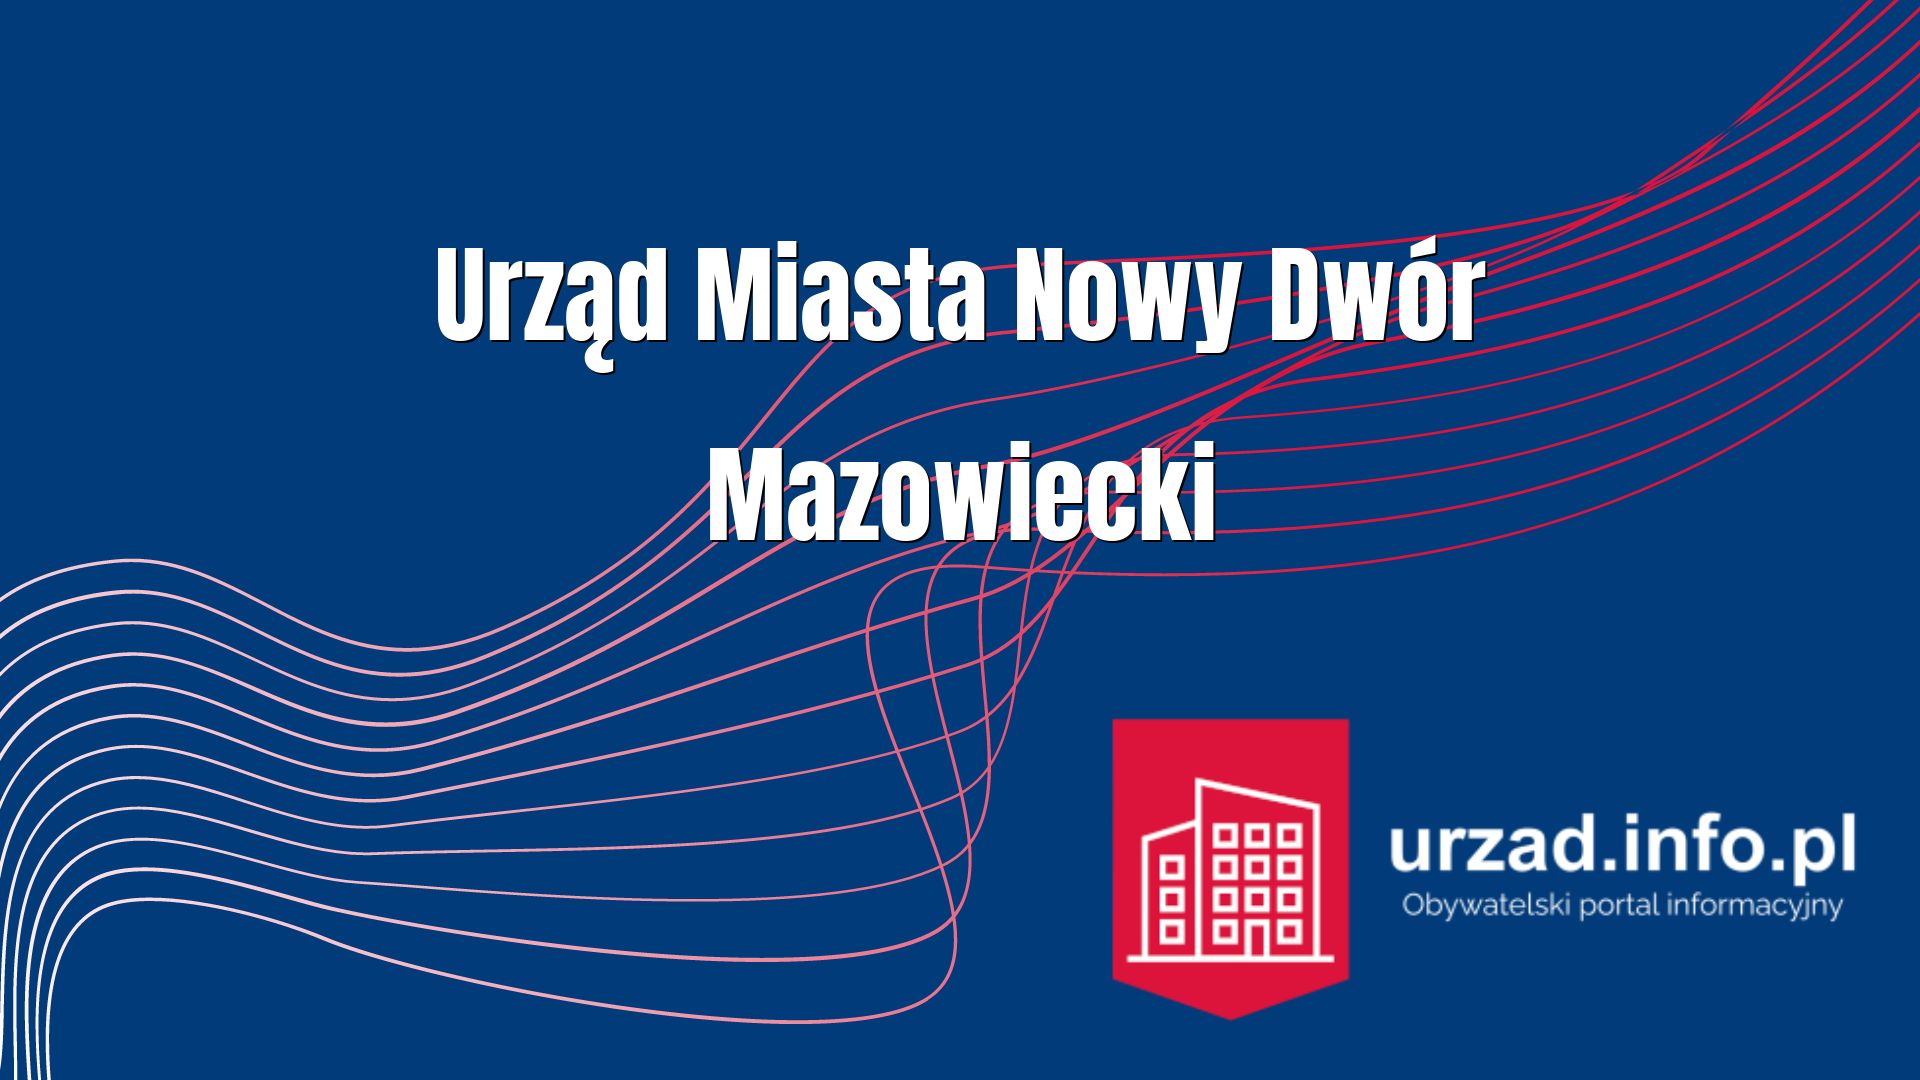 Urząd Miasta Nowy Dwór Mazowiecki